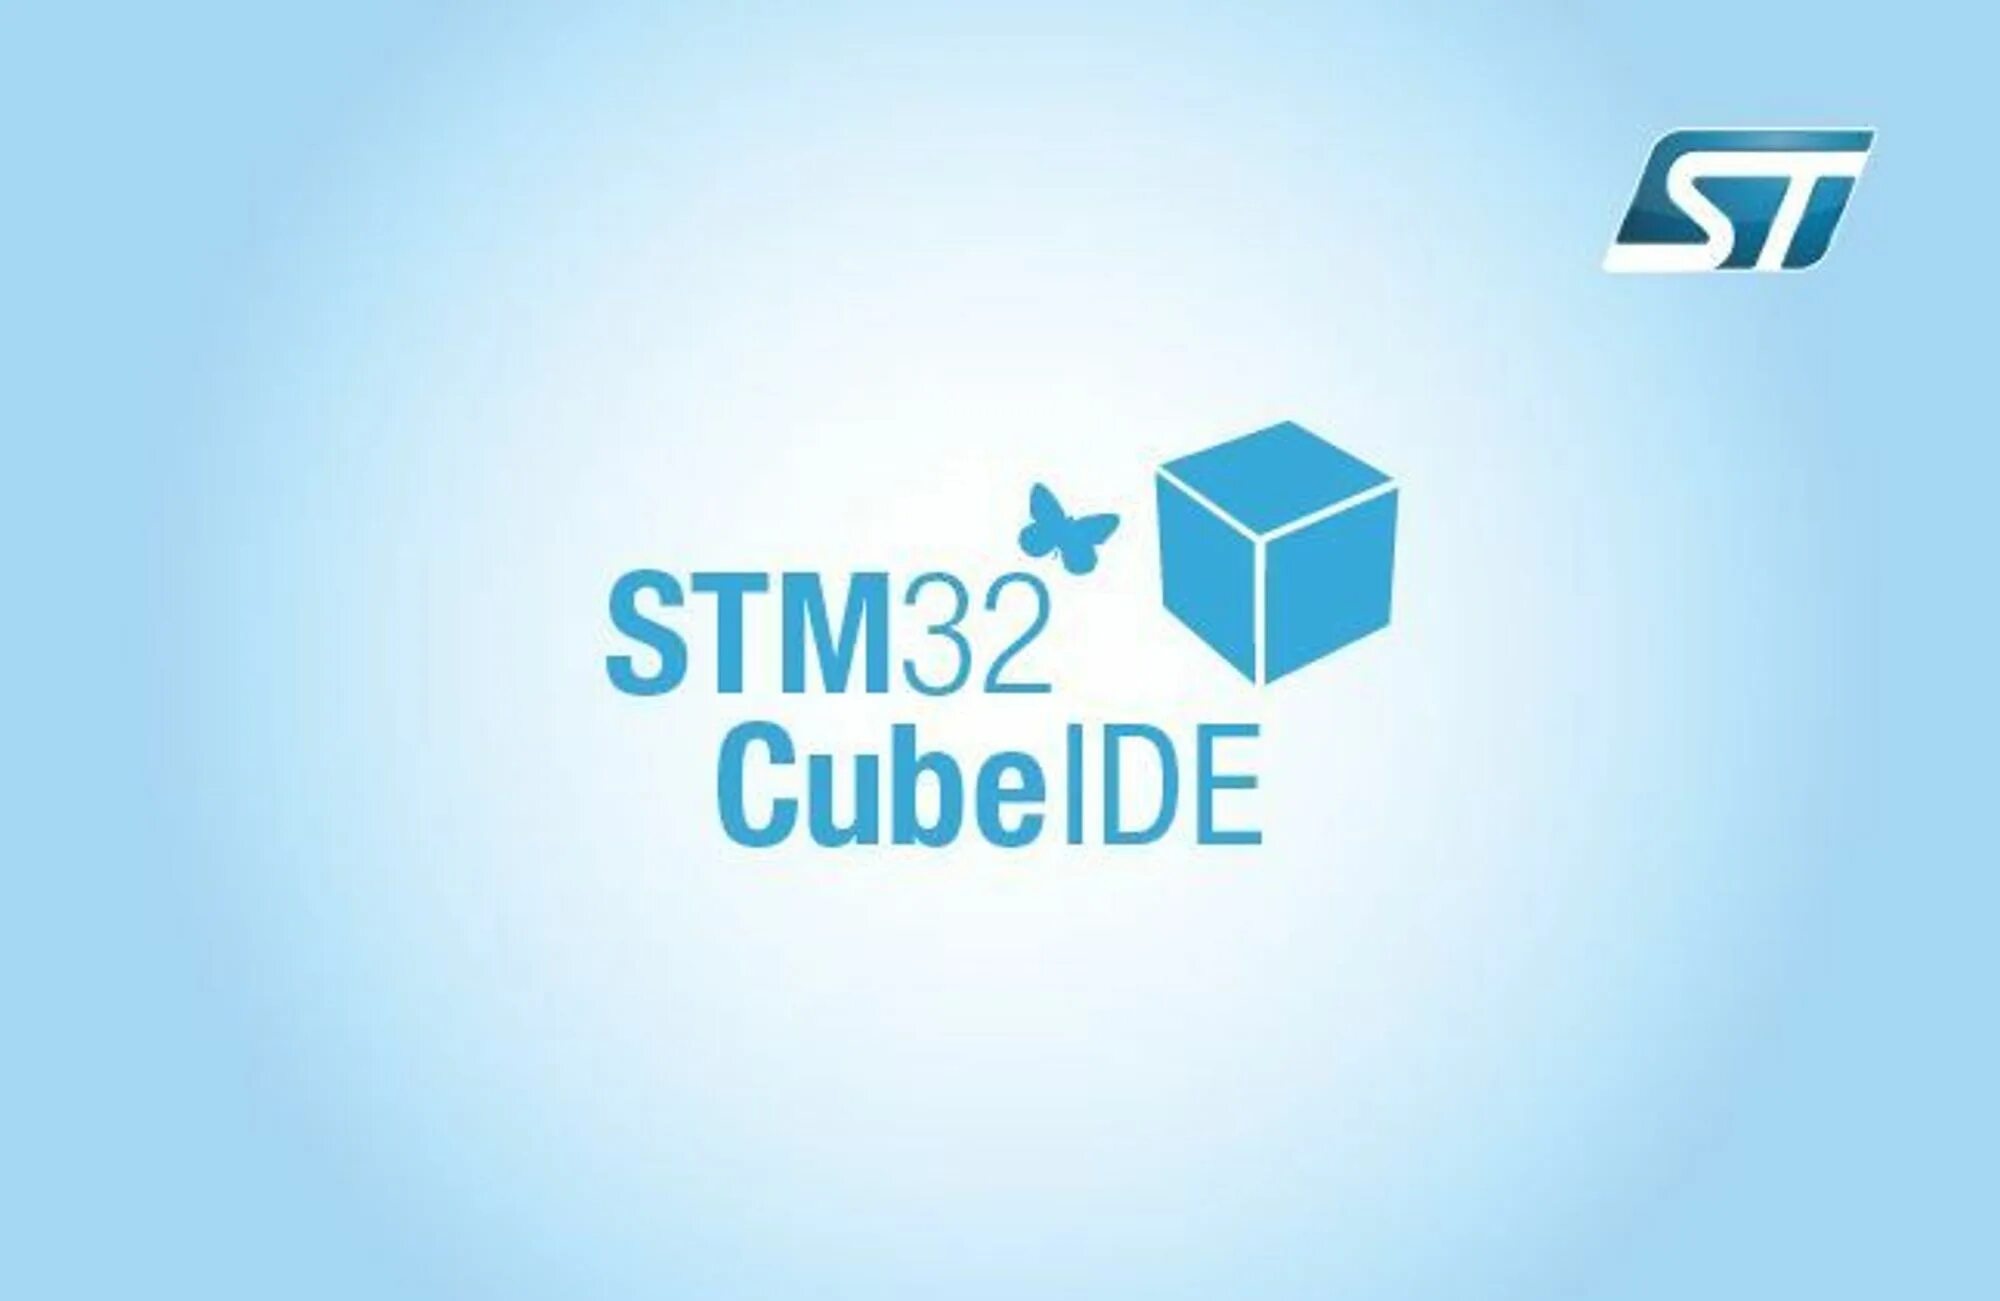 Stm32 cube mx. Stm32cubemx ide. Cube MX stm32. Stm32 Cube ide. Stm32cubeide stm32cubemx.